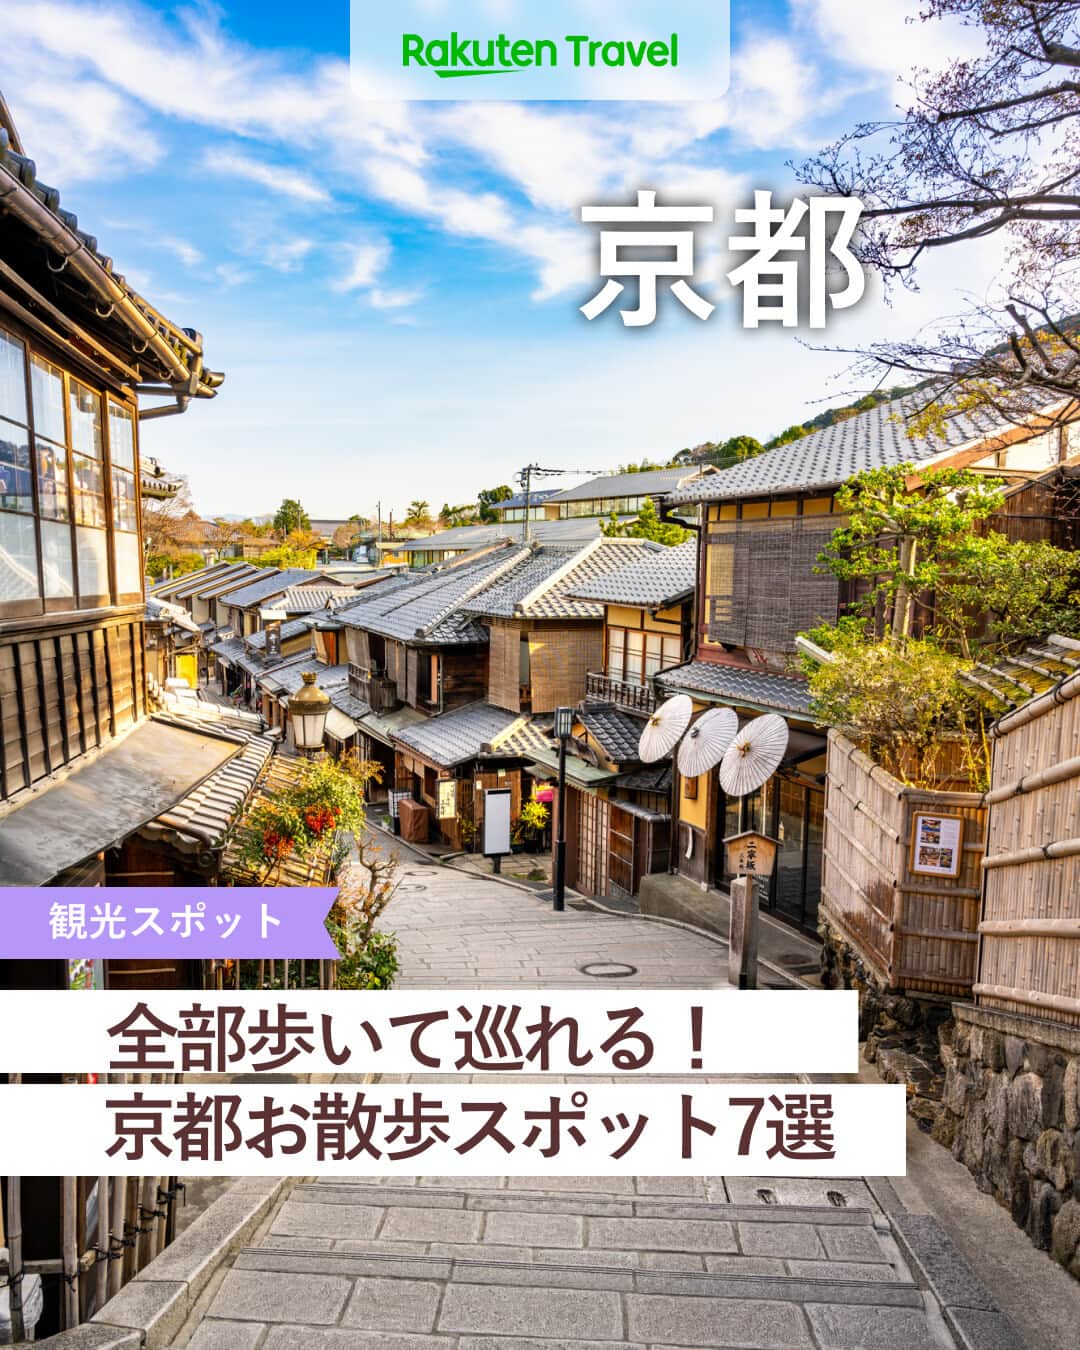 楽天トラベル のインスタグラム：「投稿を保存して見返してね😊 毎日おすすめの観光スポットやホテルを紹介している 楽天トラベル💚 👉@rakutentravel  ーーーーーーーーーーーーー  本日は、京都の歩いて巡れるお散歩スポットを紹介します☺ 京都らしい町並みを各名所で感じ取ることができます🌿 過ごしやすい気候の中ゆっくりお散歩したいですね…☀  ーーーーーーーーーーーーー  1　#花見小路 2　#安井金比羅宮 3　#八坂庚申堂（やさかこうしんどう） 4　#スターバックスコーヒー京都二寧坂ヤサカ茶屋店 5　#祇園新橋 6　#錦市場  ーーーーーーーーーーーーー  #rakutentravel をつけて投稿してくだされば、 あなたの撮った写真が楽天トラベルアカウントに掲載されるかも👀  旅の計画に夢中になれるインスタマガジン👜 楽天トラベルをフォローして理想の旅をみつけてね🛫@rakutentravel  いってみたいと思った人は気軽にコメント欄にスタンプ送ってね💕  ーーーーーーーーーーーーー」